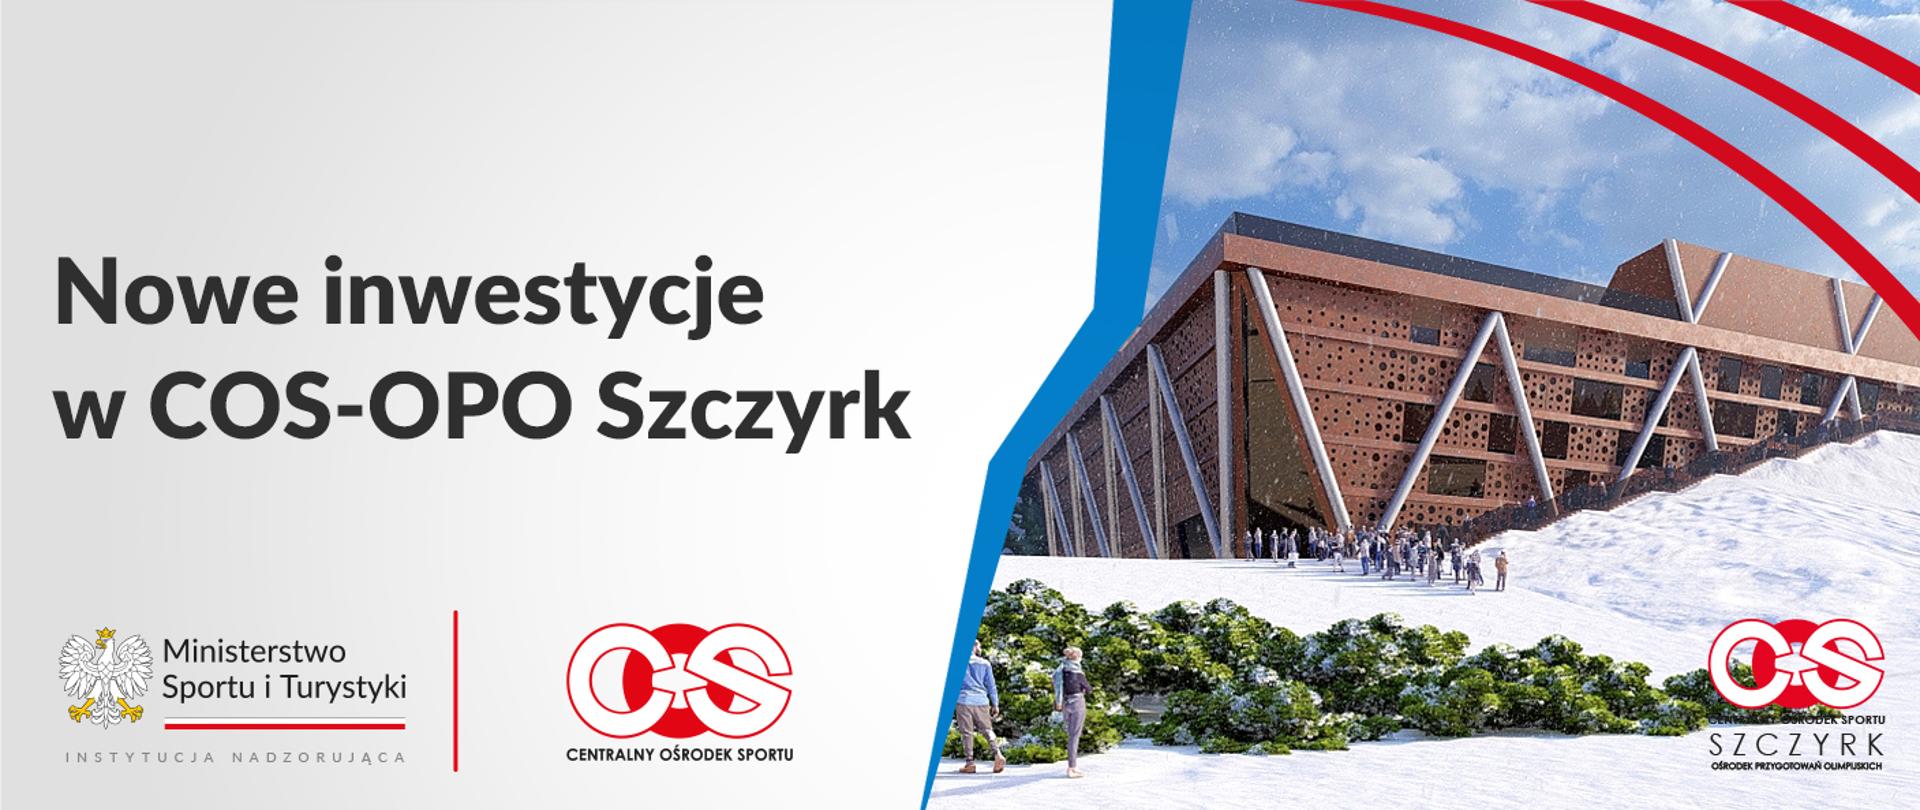 Nowe inwestycje w COS-OPO w Szczyrku; plansza z wizualizacją planowanej inwestycji w Sczyrku na Kubalonce